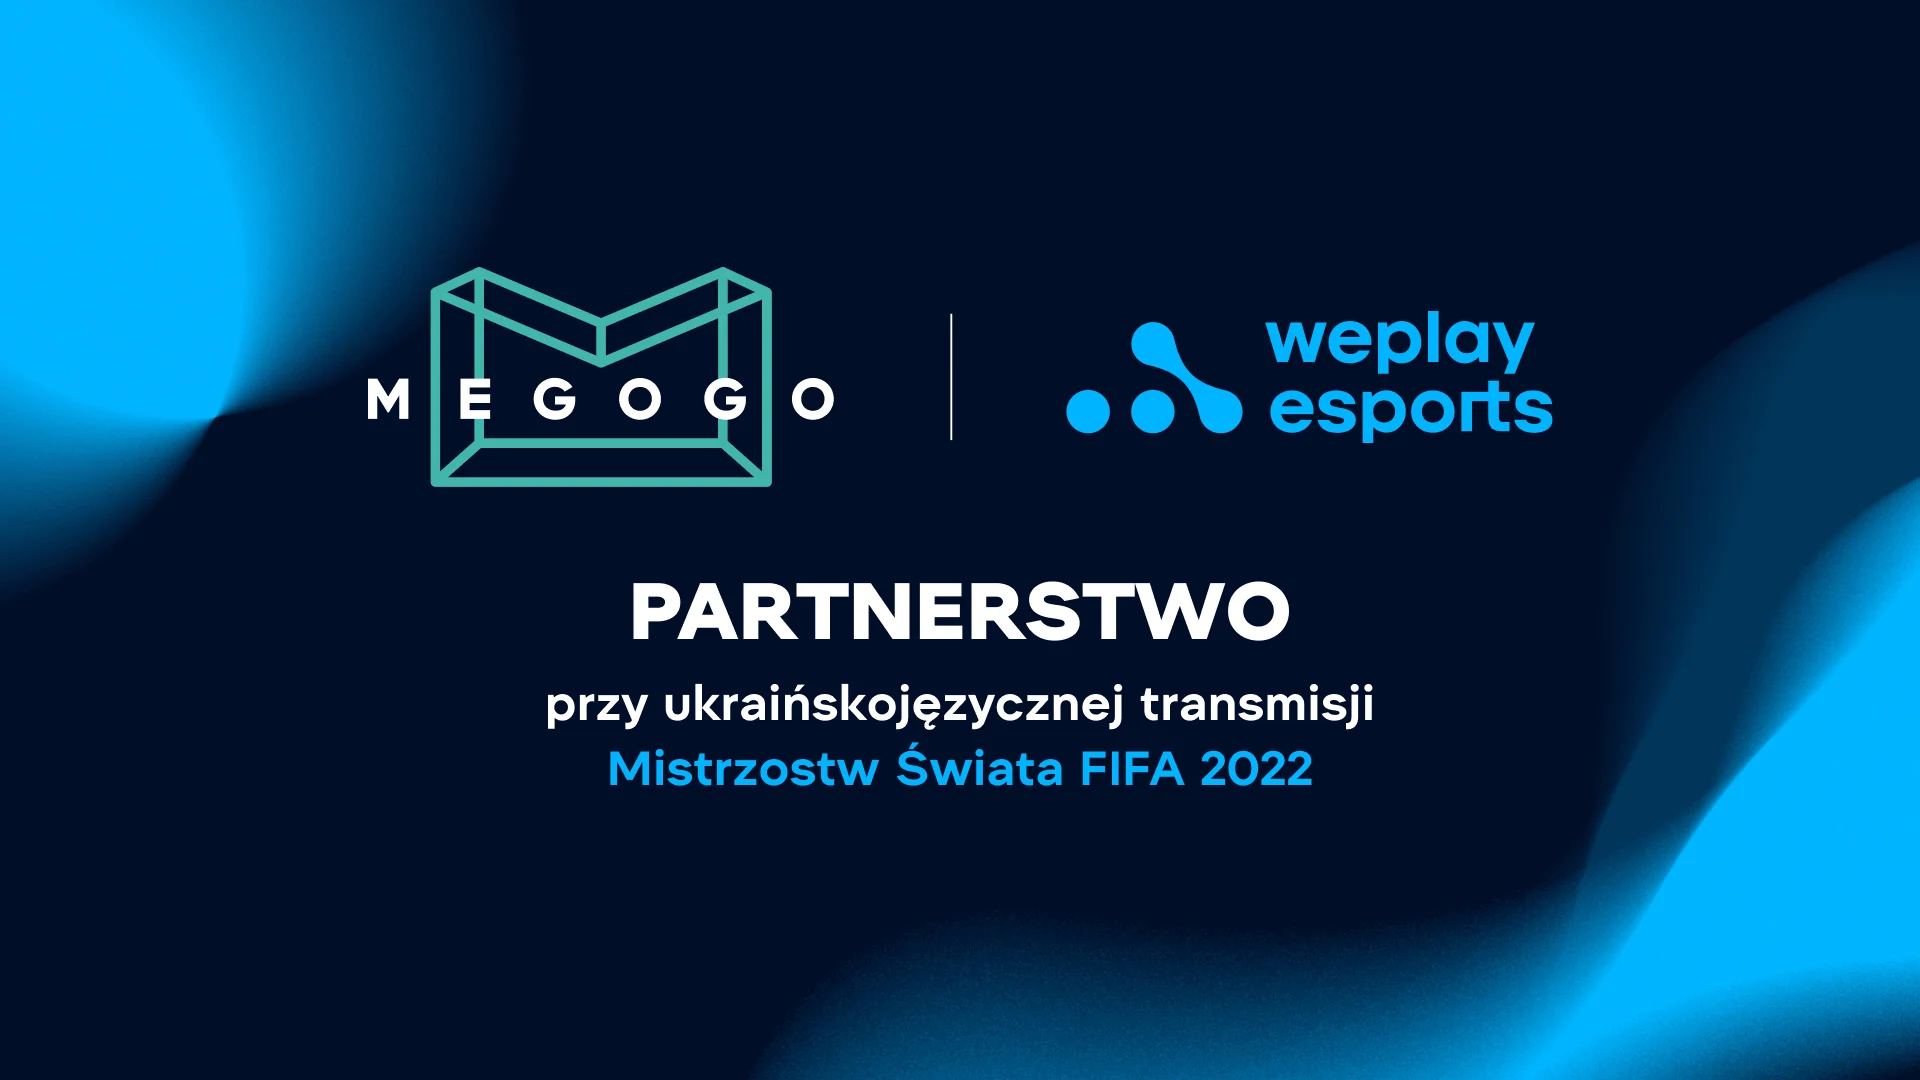 WePlay Esports zostało oficjalnym partnerem producentem ukraińskojęzycznej transmisji Mistrzostw Świata FIFA 2022. Obraz: WePlay Holding